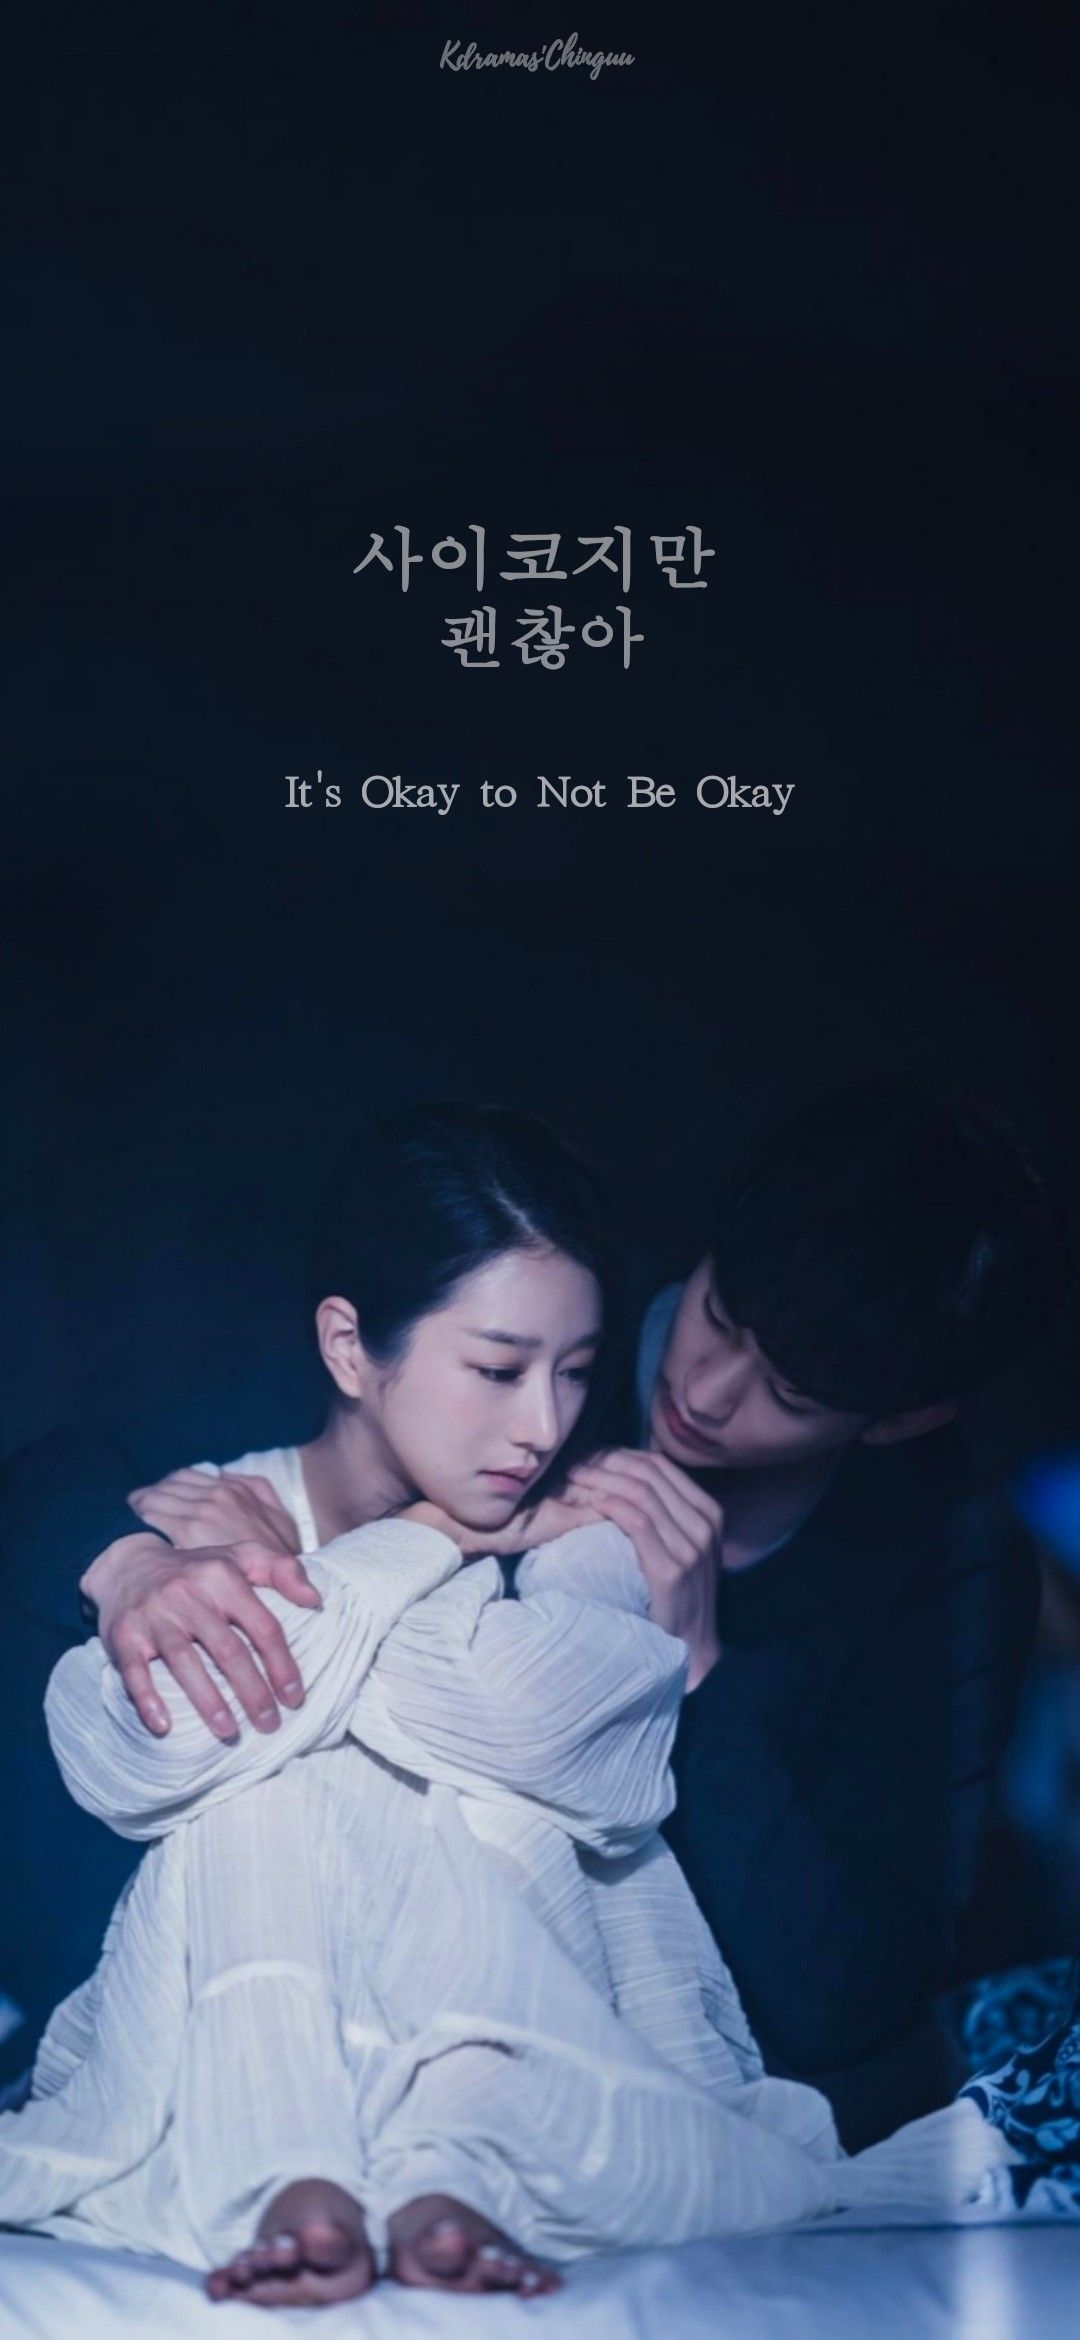 Kim Soo Hyun & Seo Ye Ji's Okay to Not Be Okay. Film romantis, Aktor, Selebritas